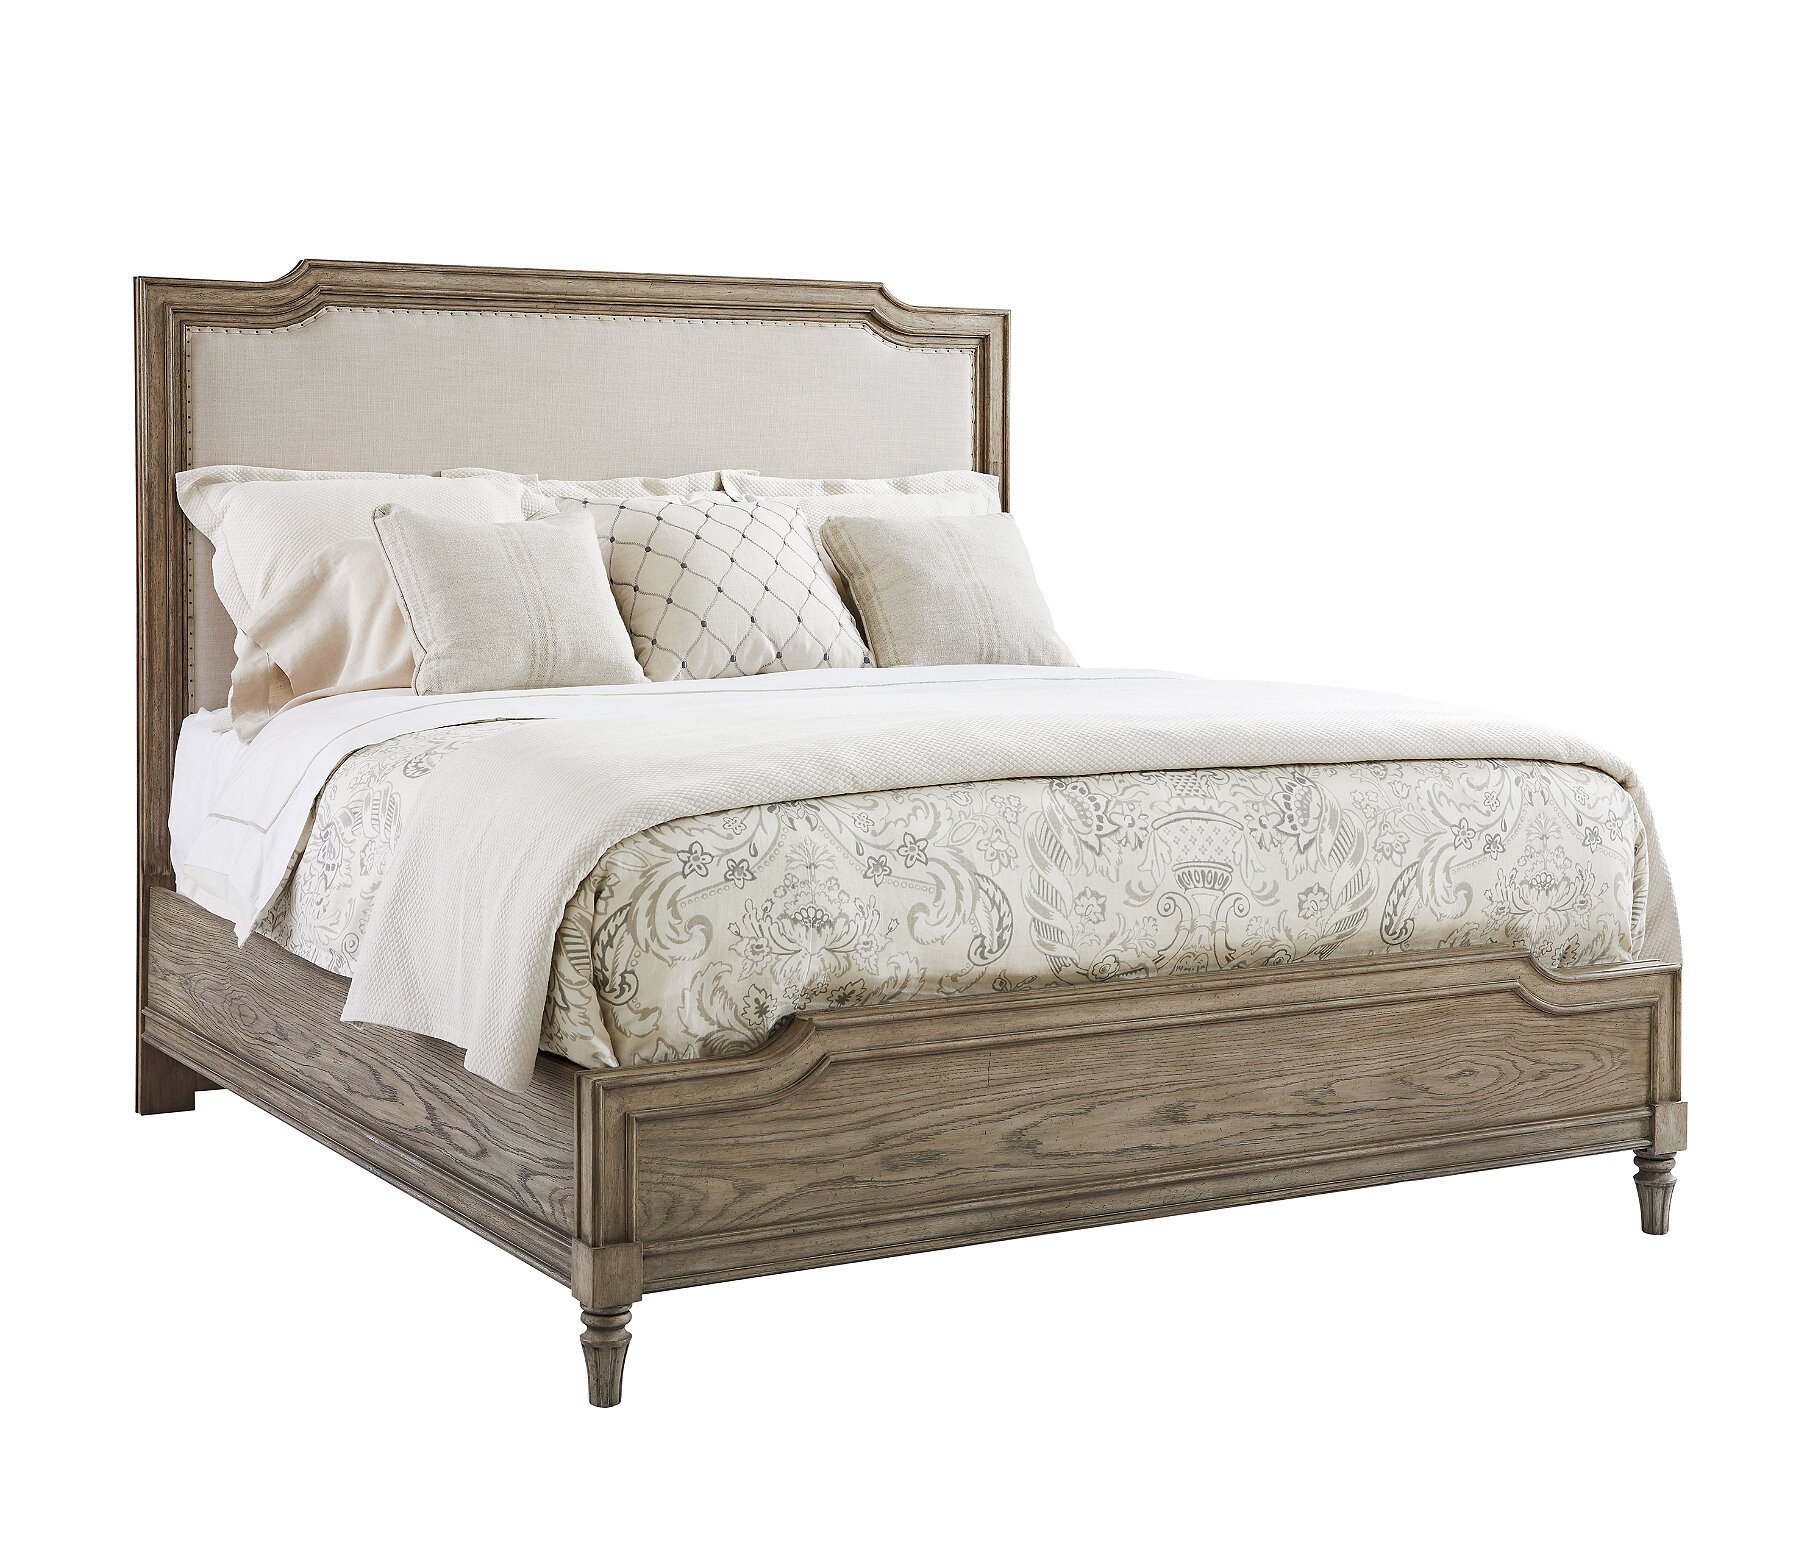 Wayfair Bedroom Set Queen Best Of Stanley Furniture Upholstered Standard Bed